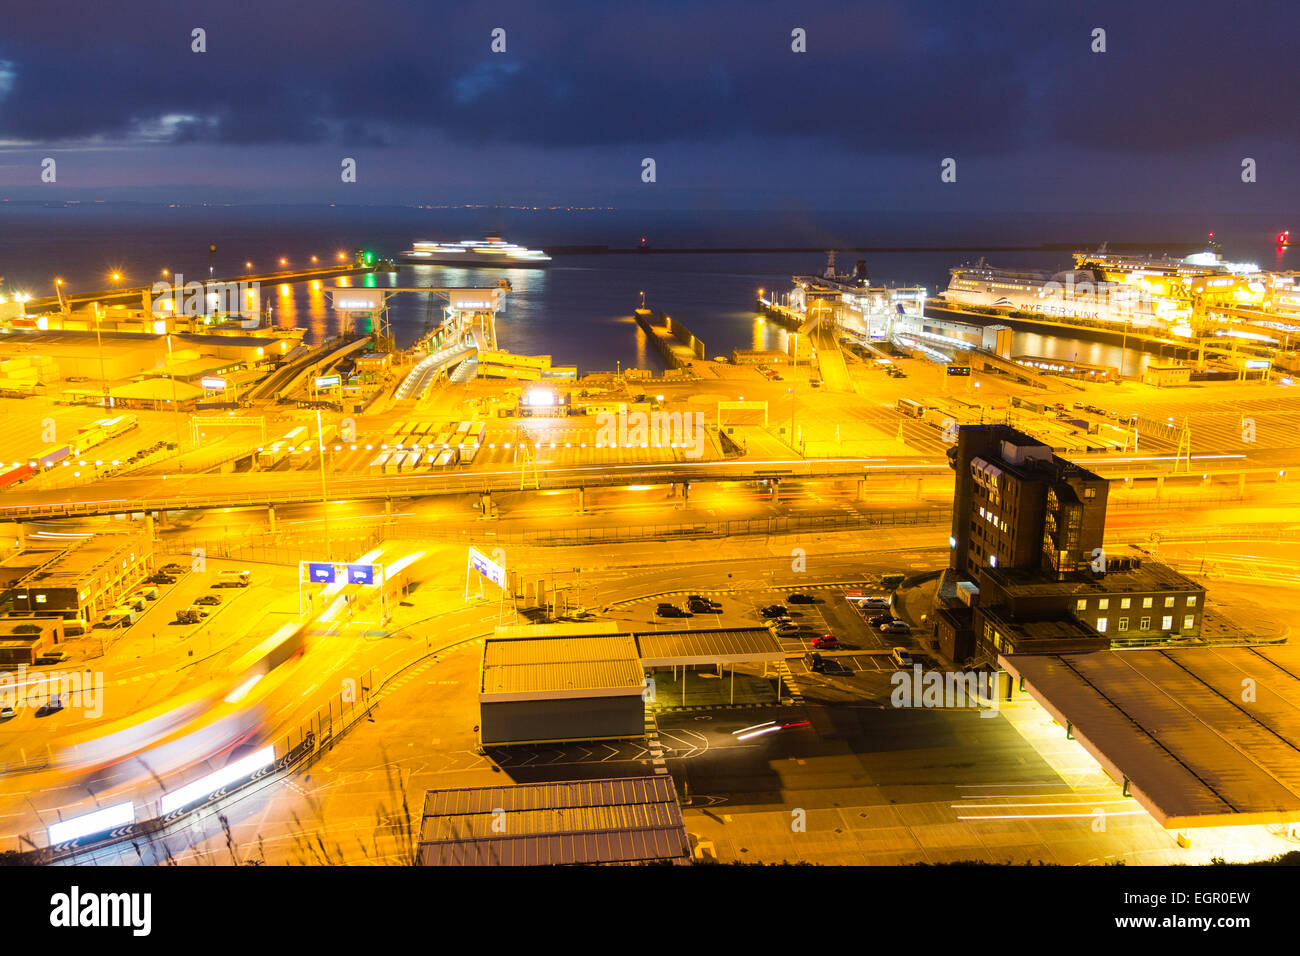 Scena notturna con l'alba che inizia al terminal dei traghetti illuminati presso il porto del canale inglese di dover. Vista ad alto angolo del porto. Foto Stock